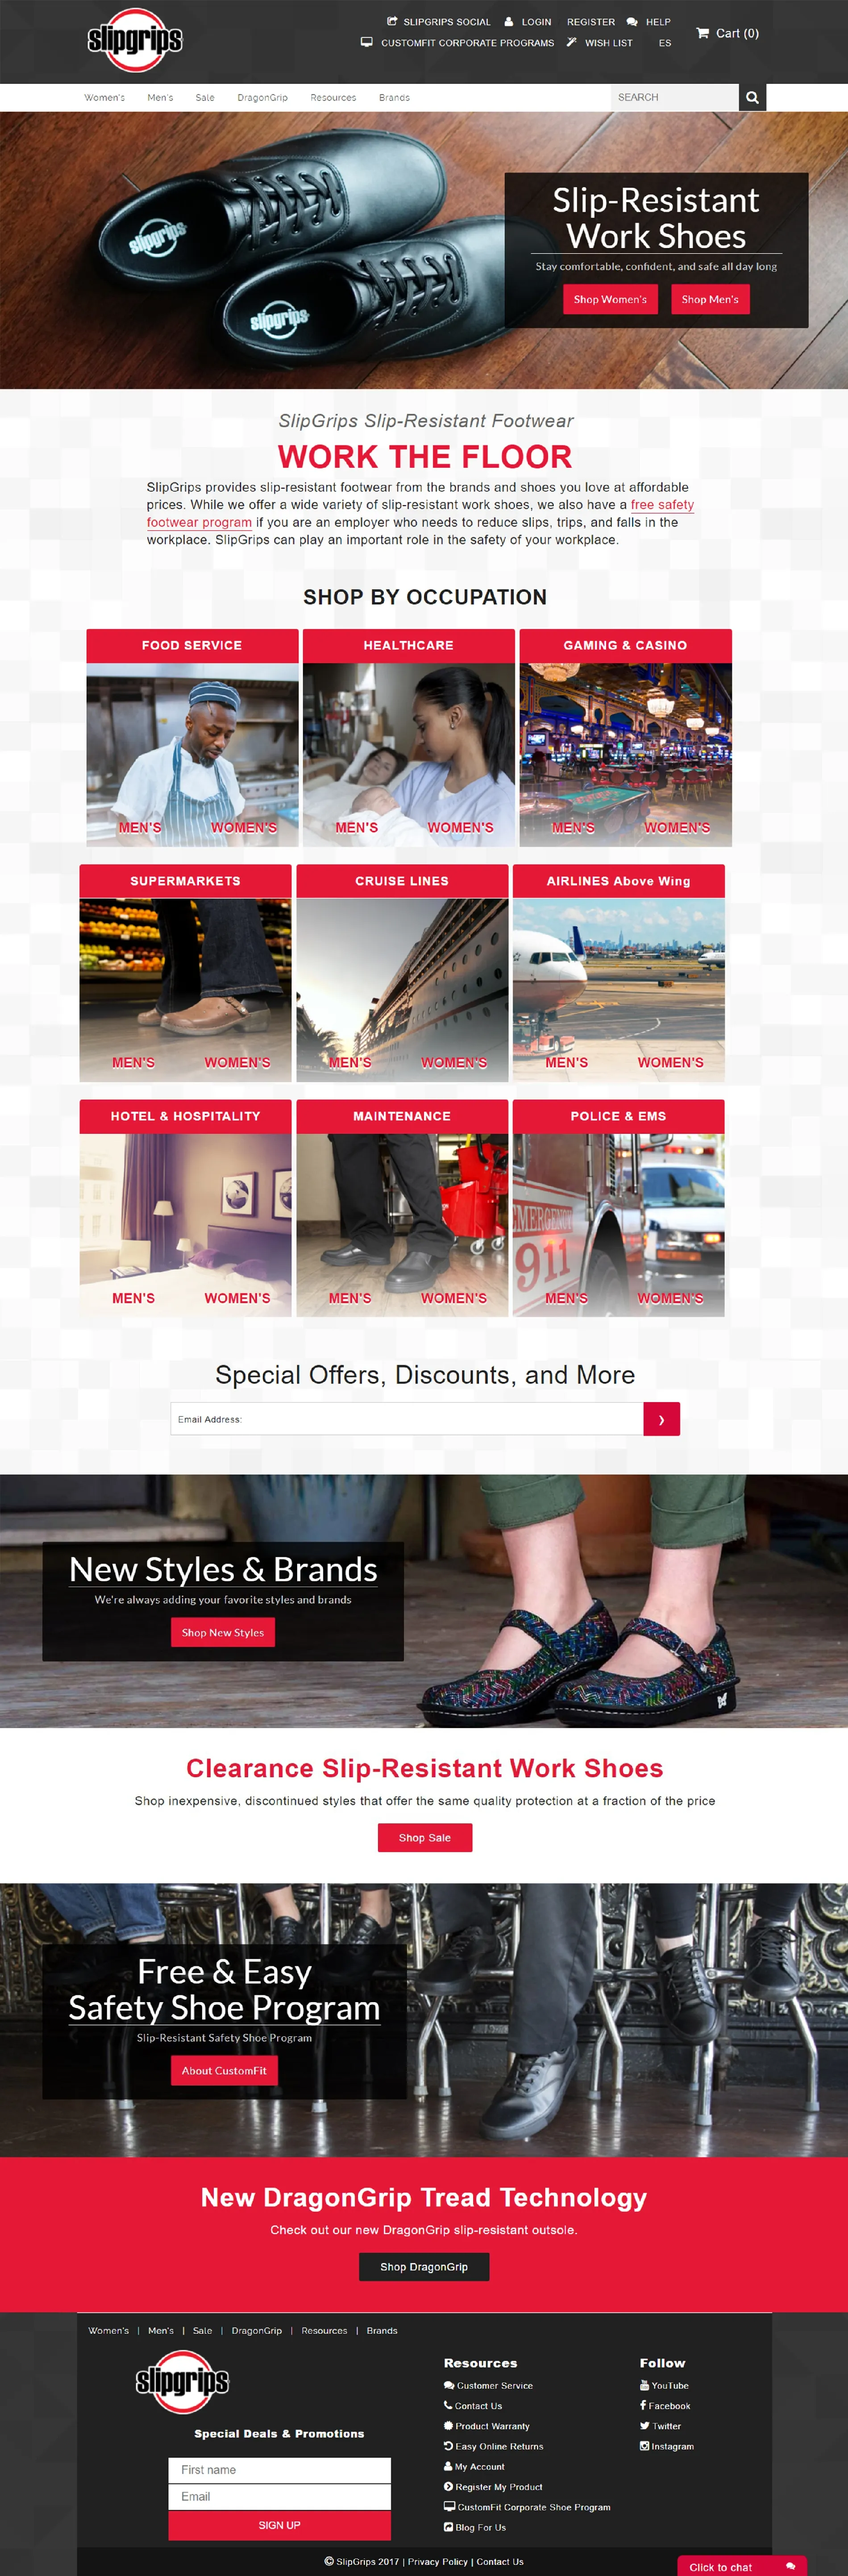 SlipGrips website design